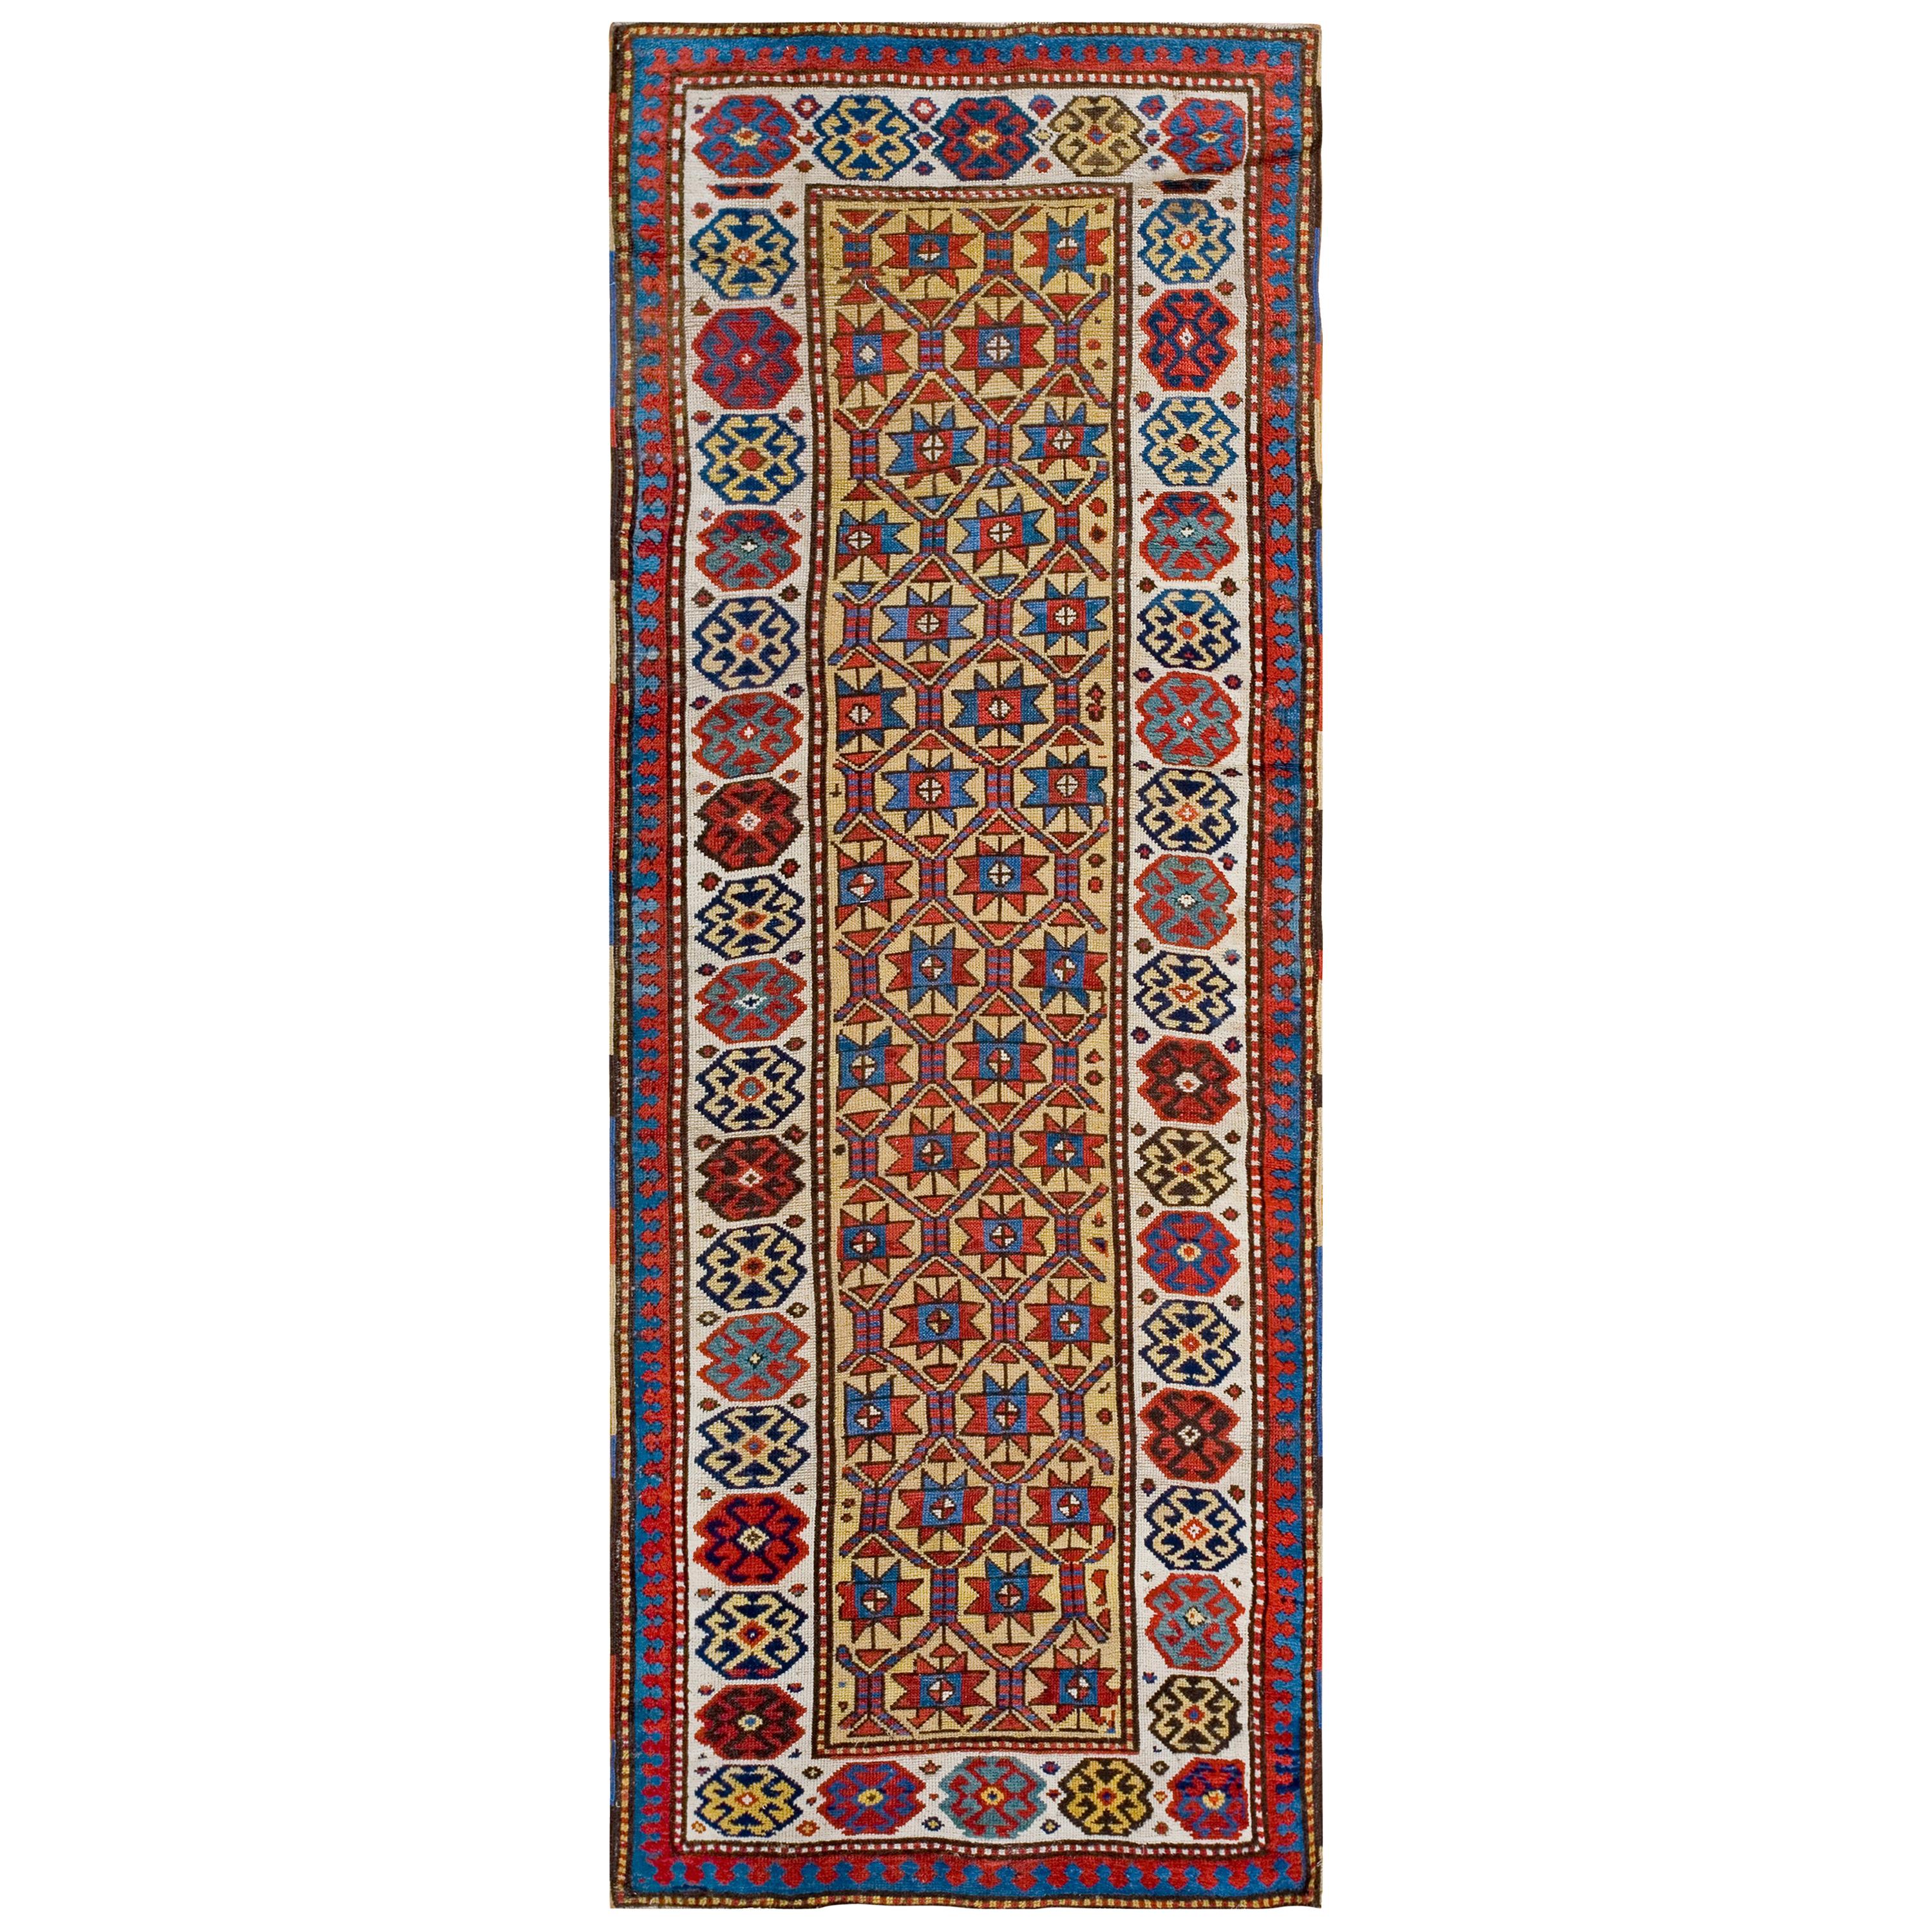 19th Century Caucasian Moghan Carpet ( 3'2" x 8'10" - 97 x 269 )